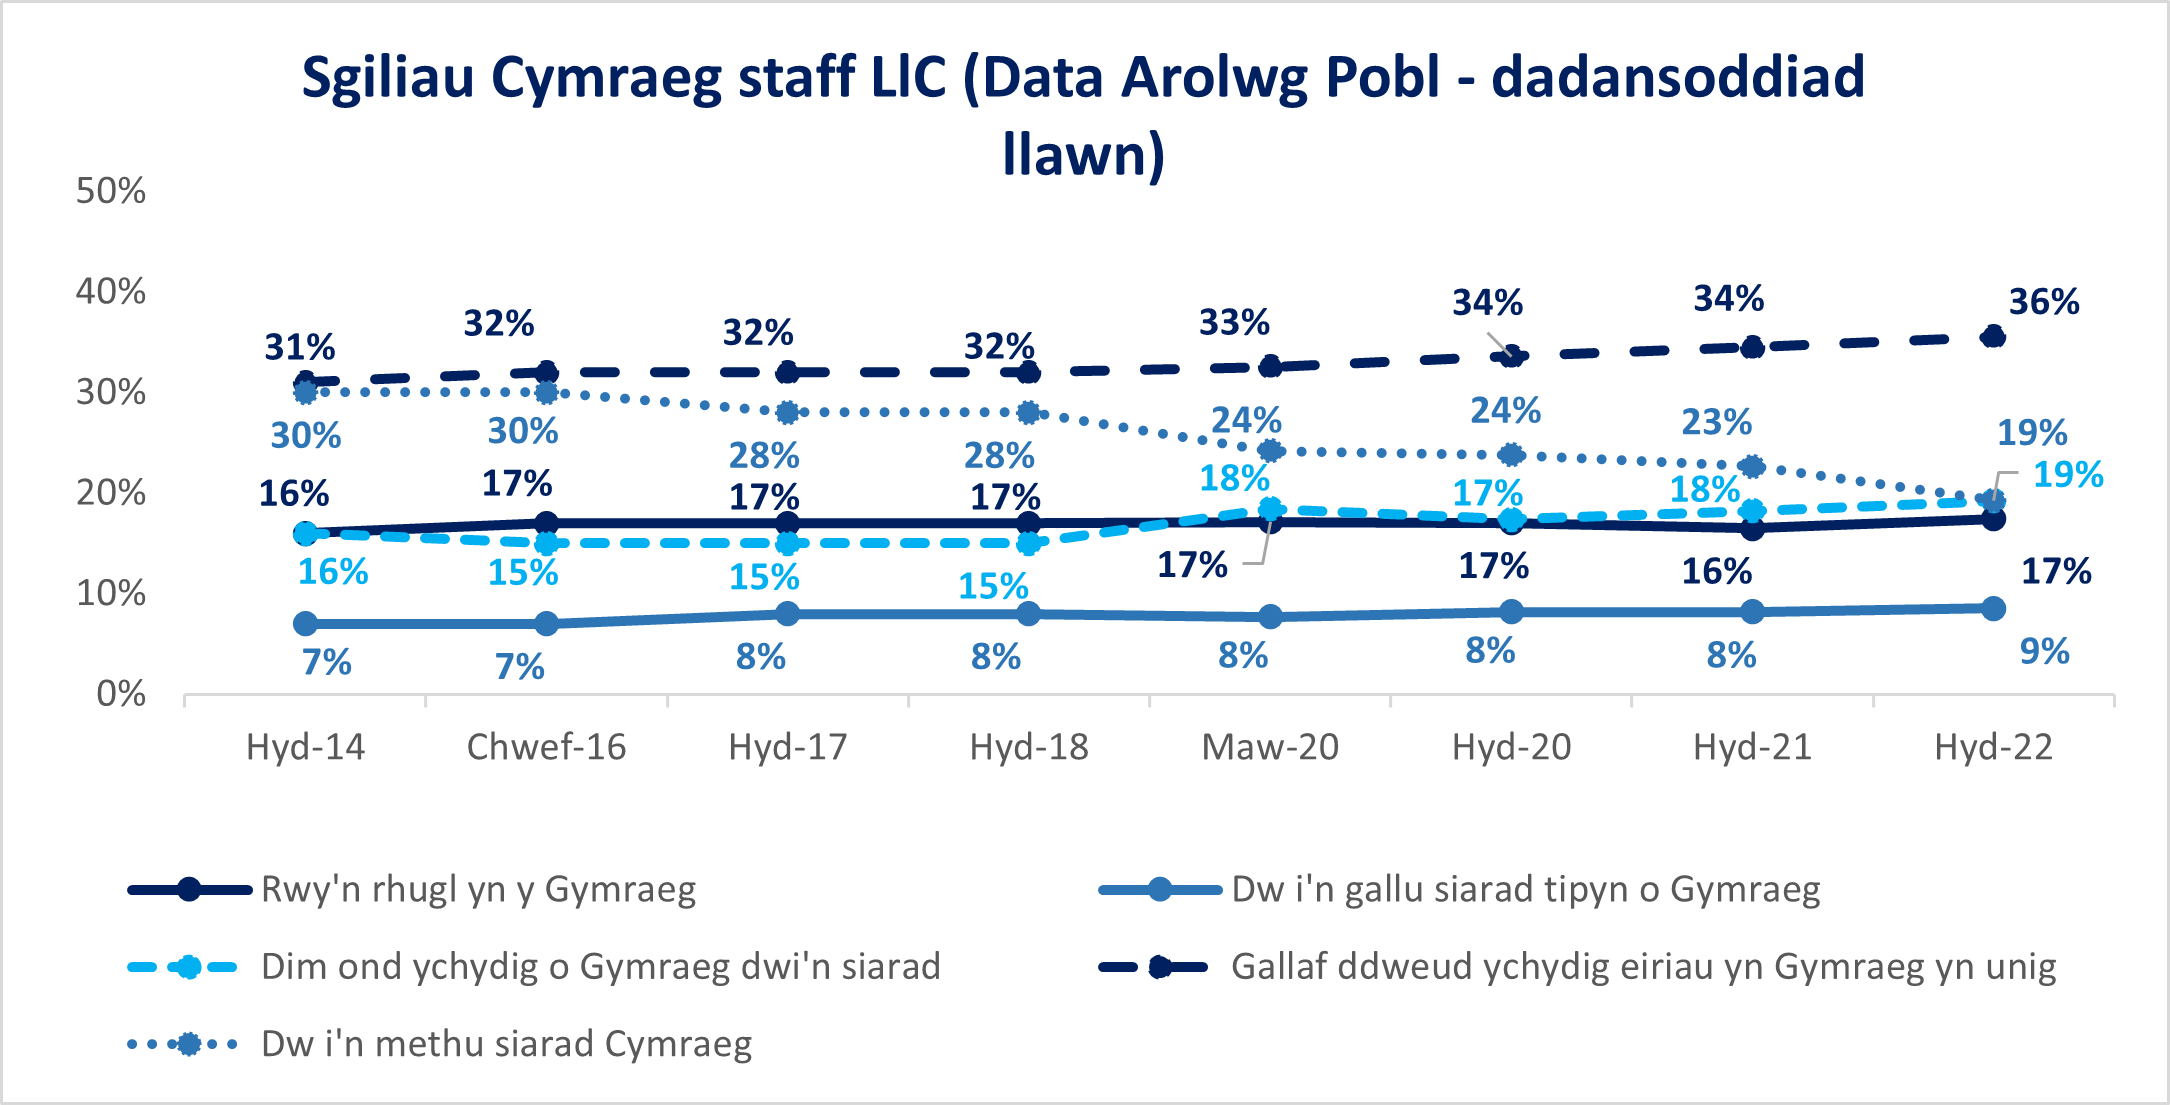 Sgiliau Cymraeg staff LlC (Data Arolwg Pobl - dadansoddiad llawn)